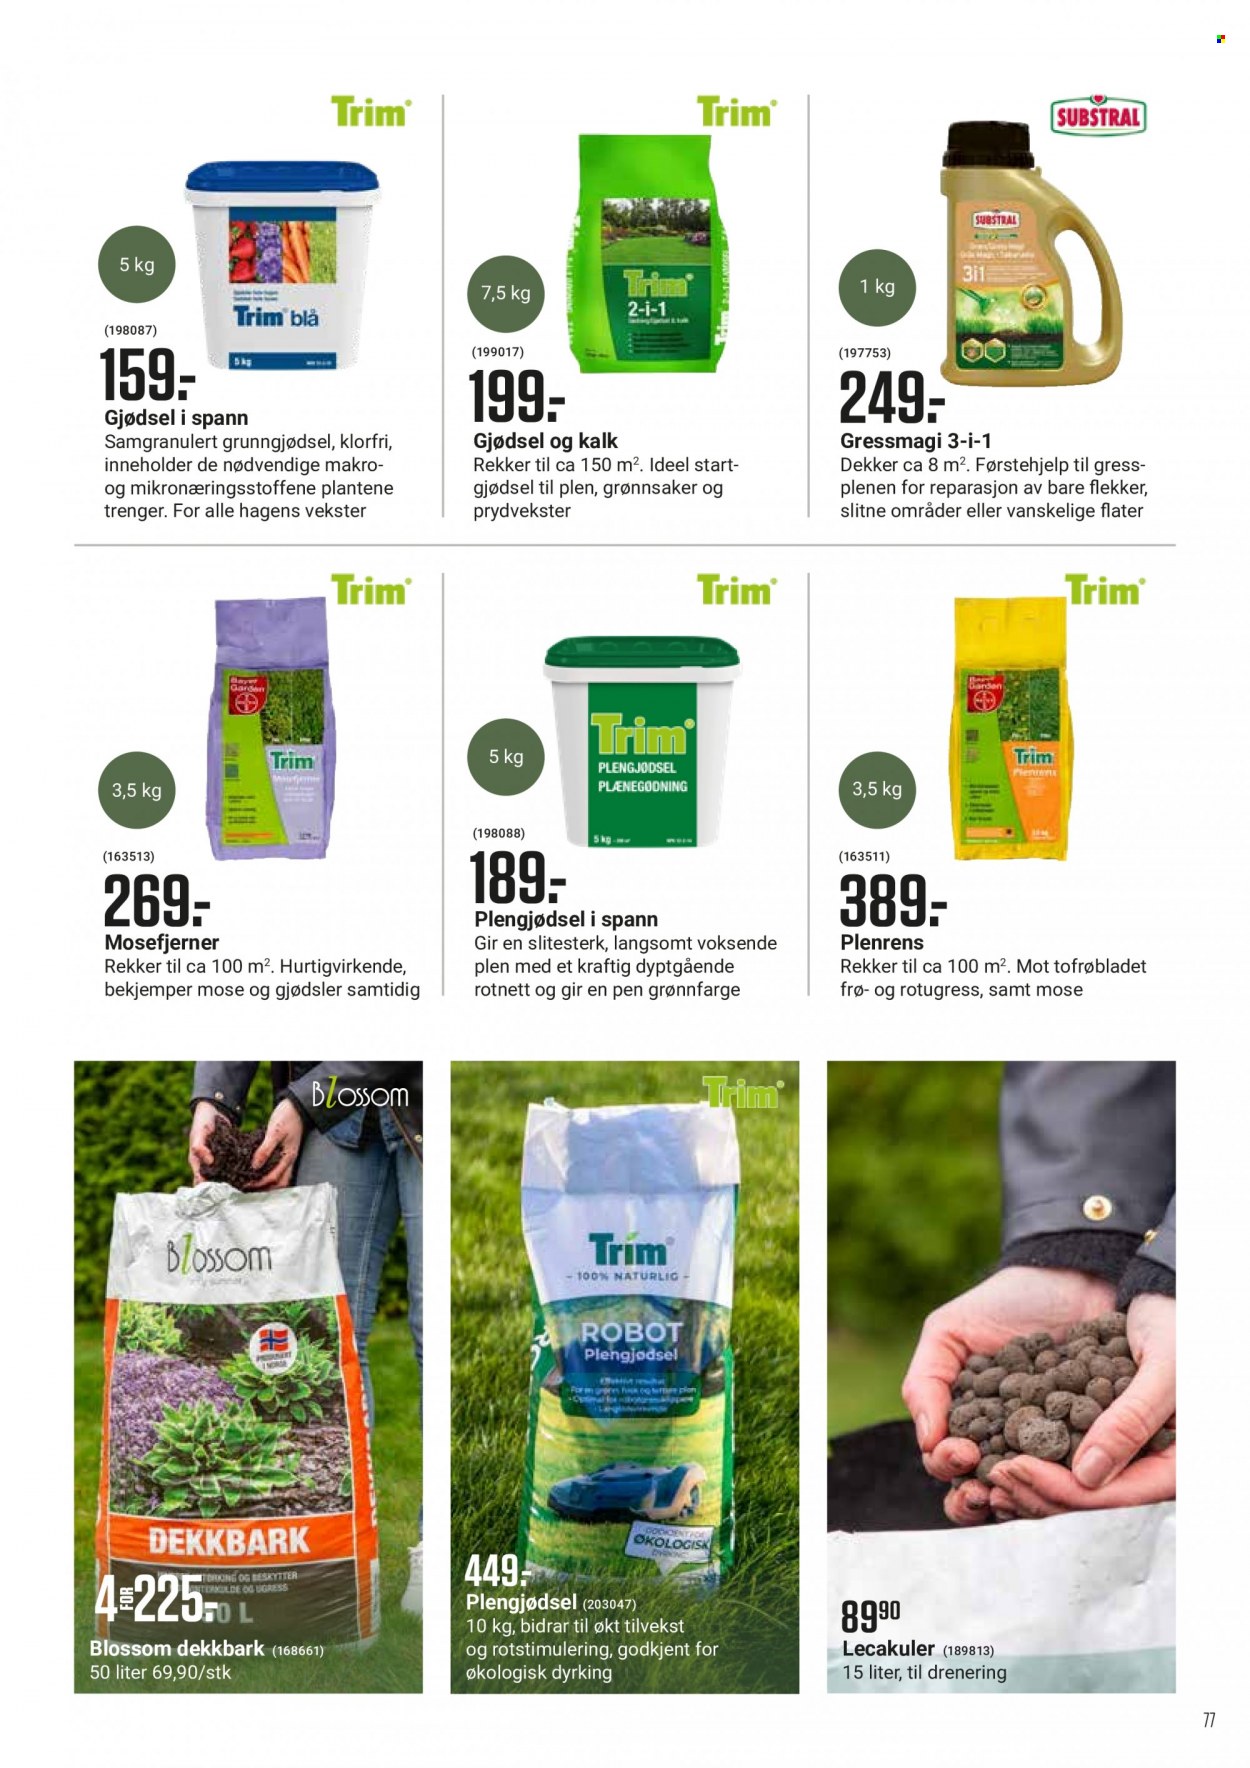 Kundeavis Europris - Produkter fra tilbudsaviser - blossom, grønnsaker. Side 77.